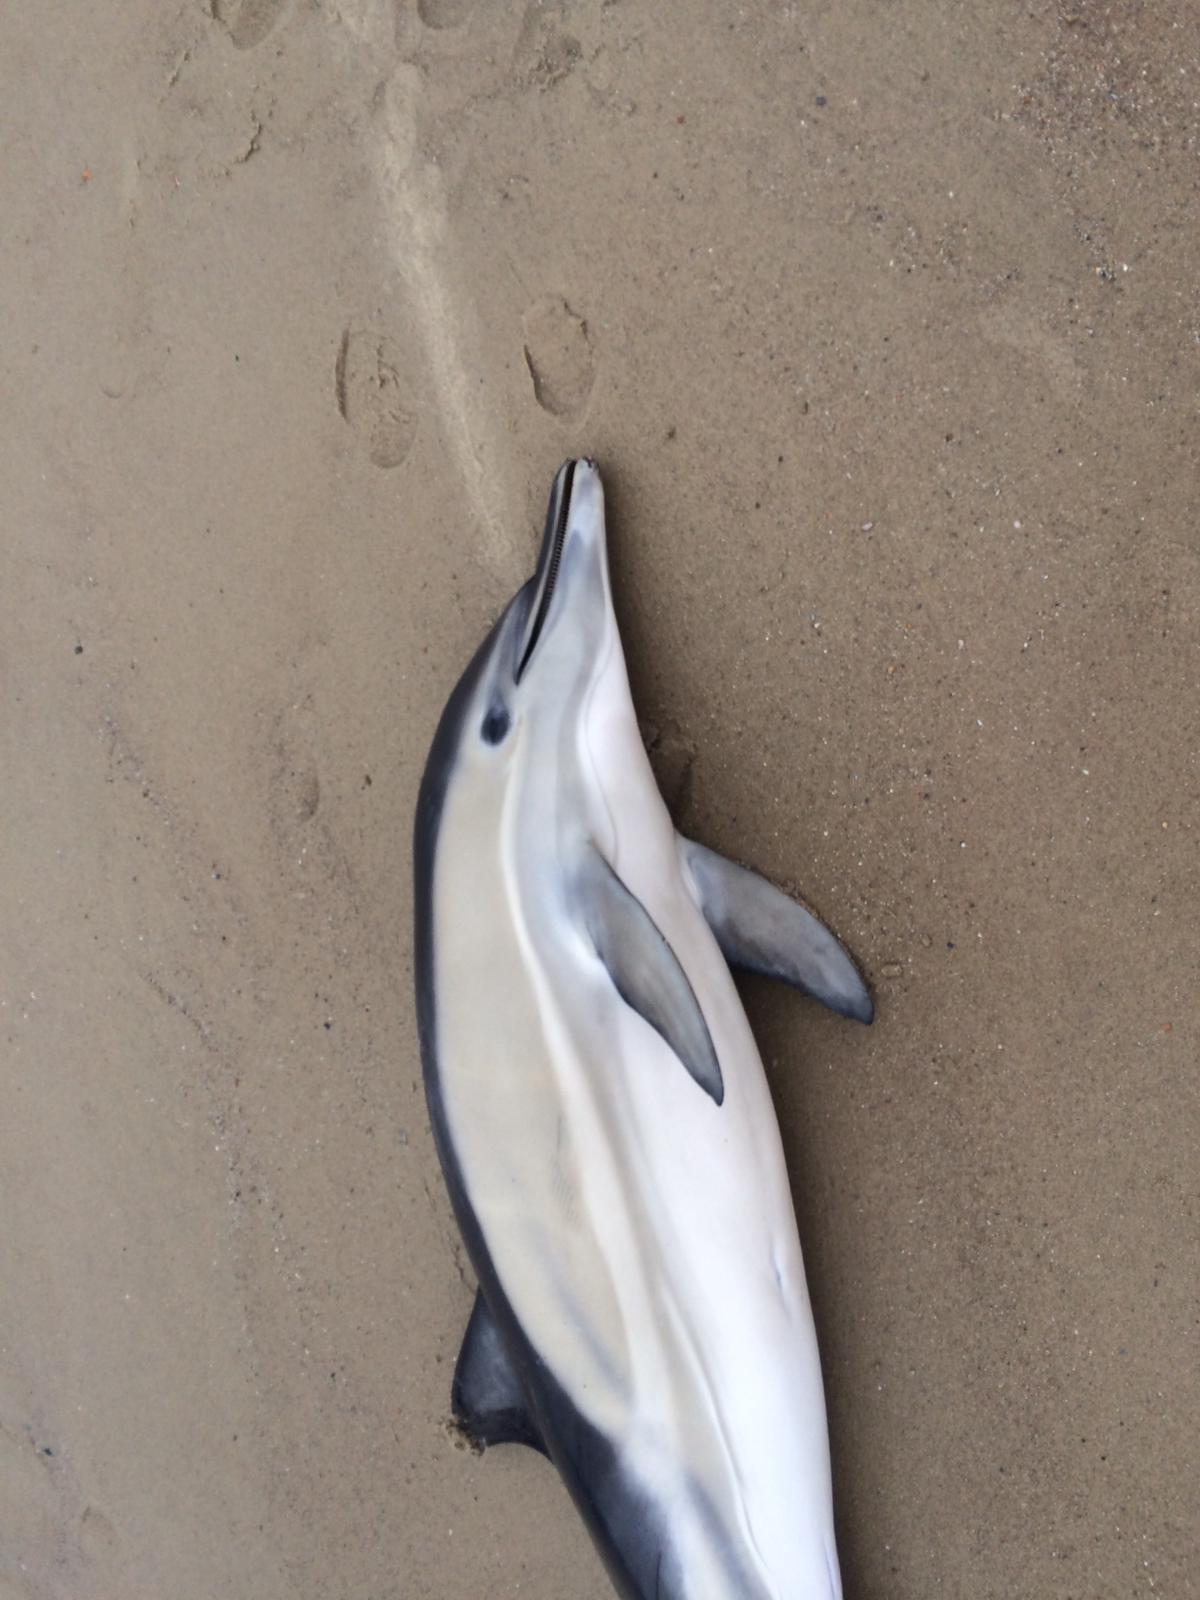 Opnieuw gewone dolfijn aangespoeld